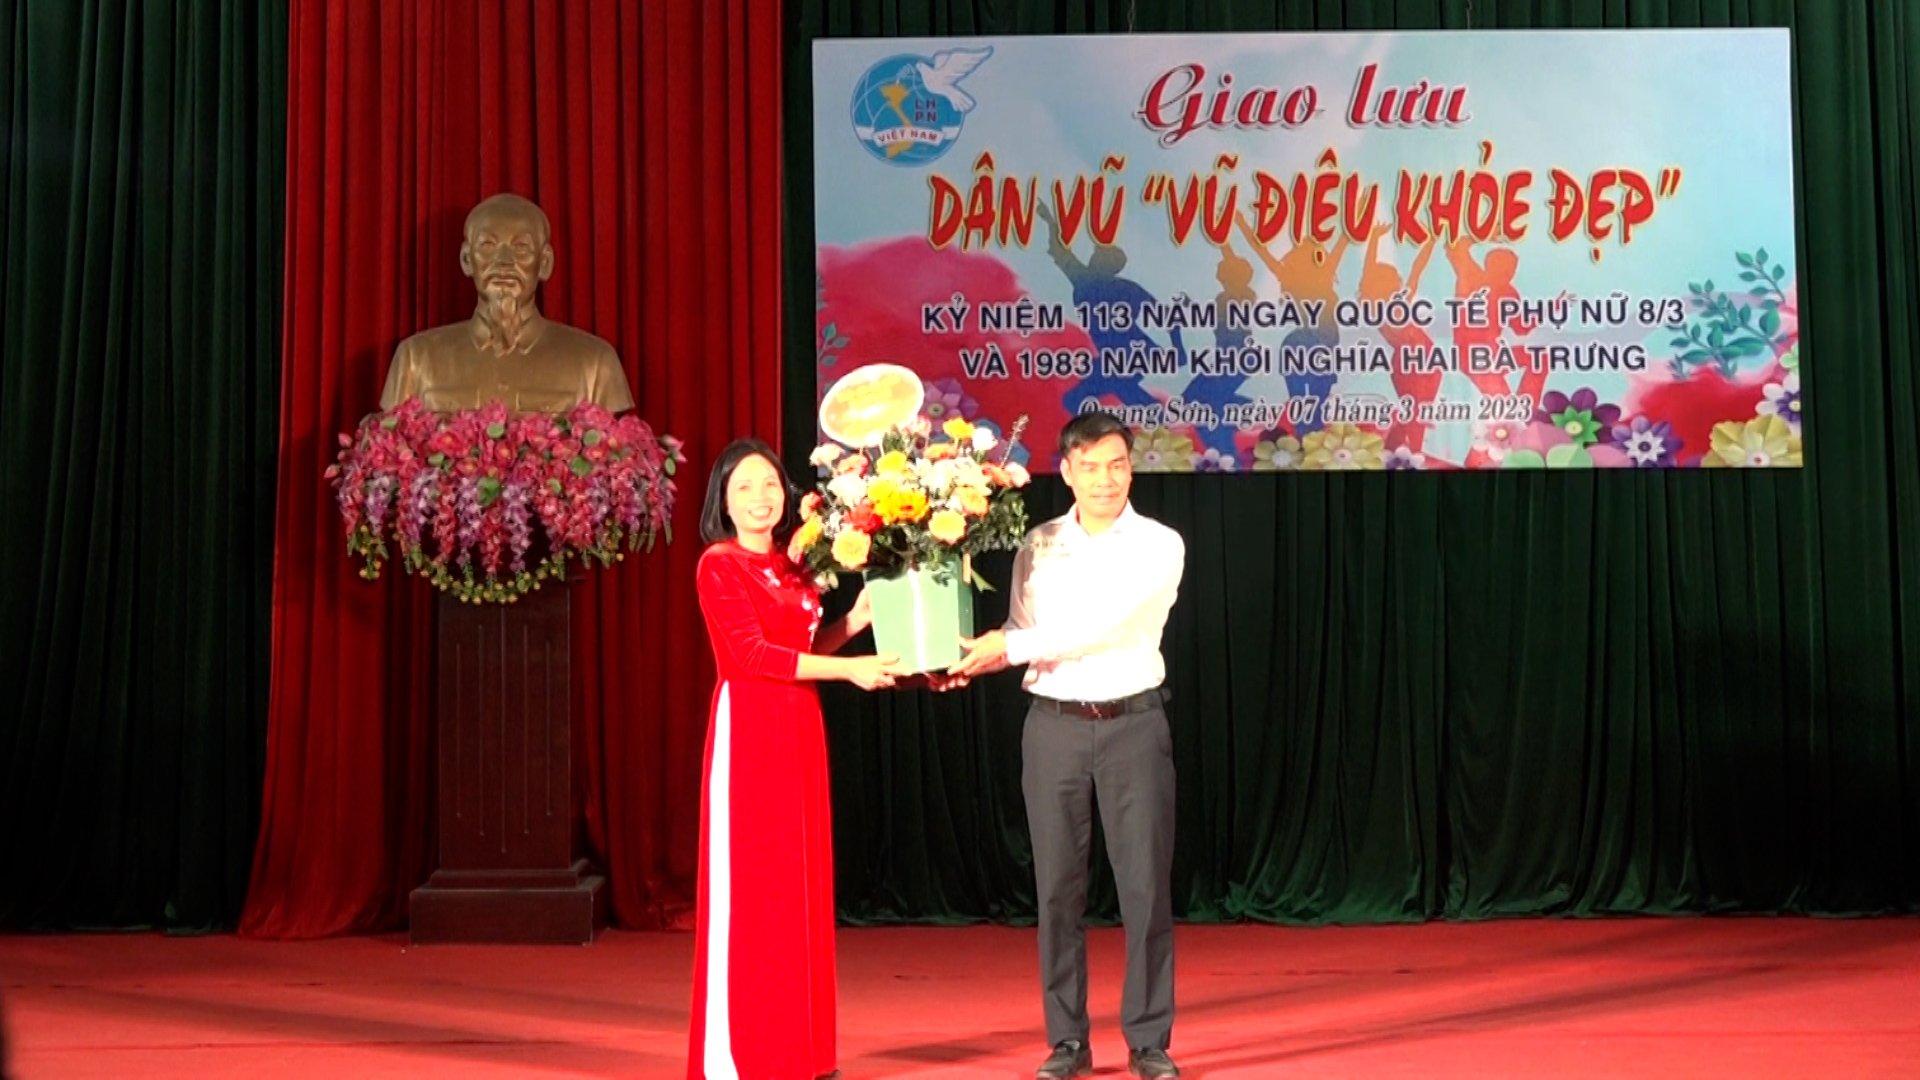  Hội LHPN xã Quang Sơn tổ chức đêm Giao lưu Dân vũ với chủ đề 